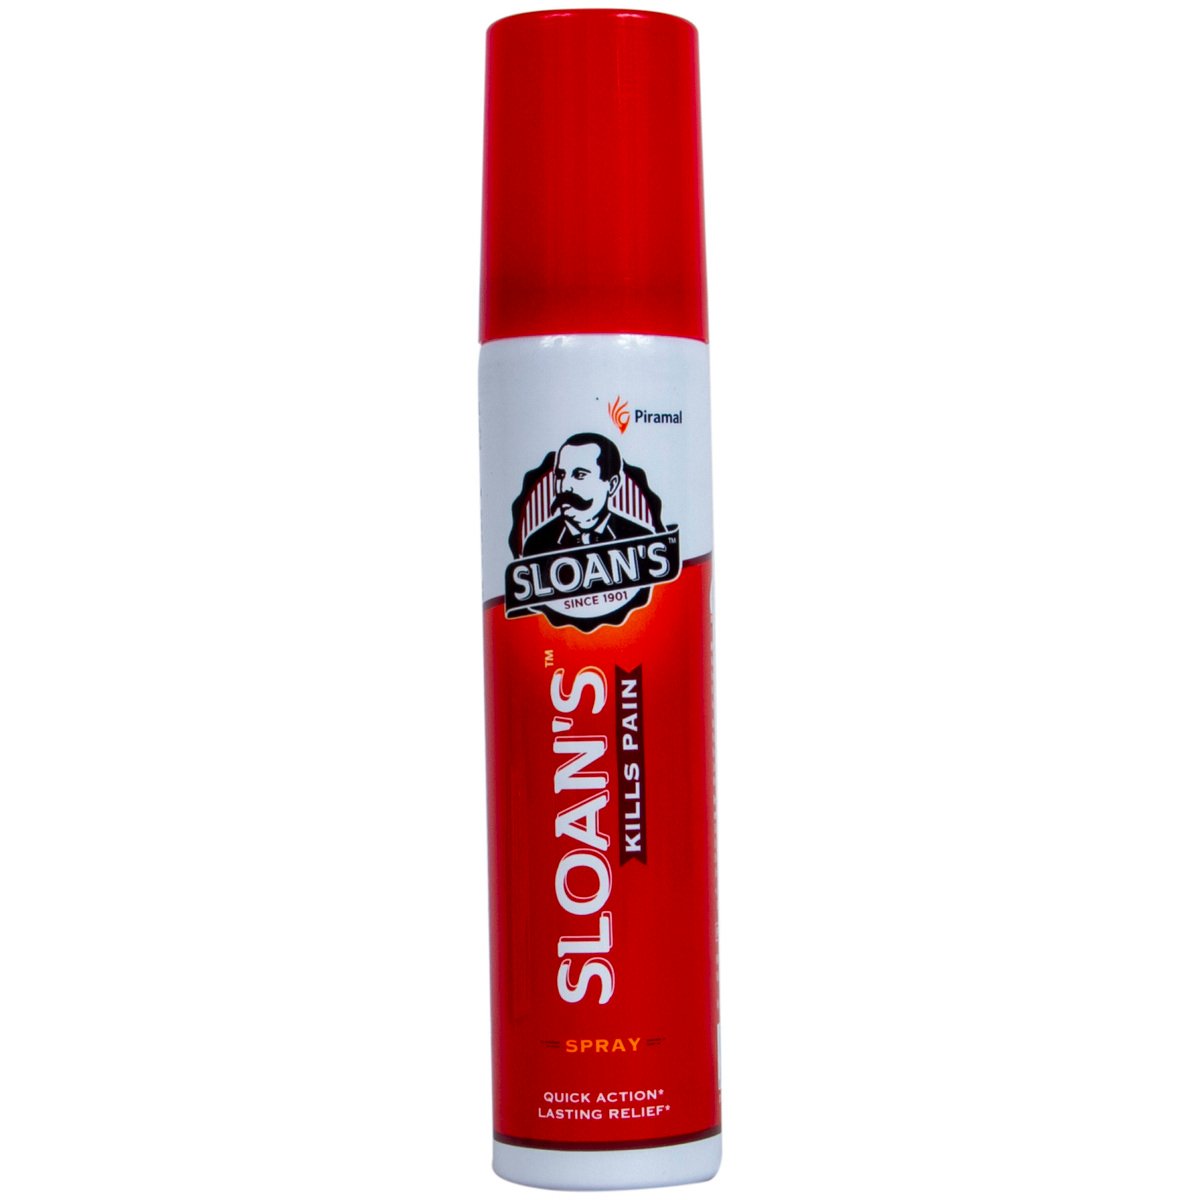 Sloan's Spray Kills Pain 50 g